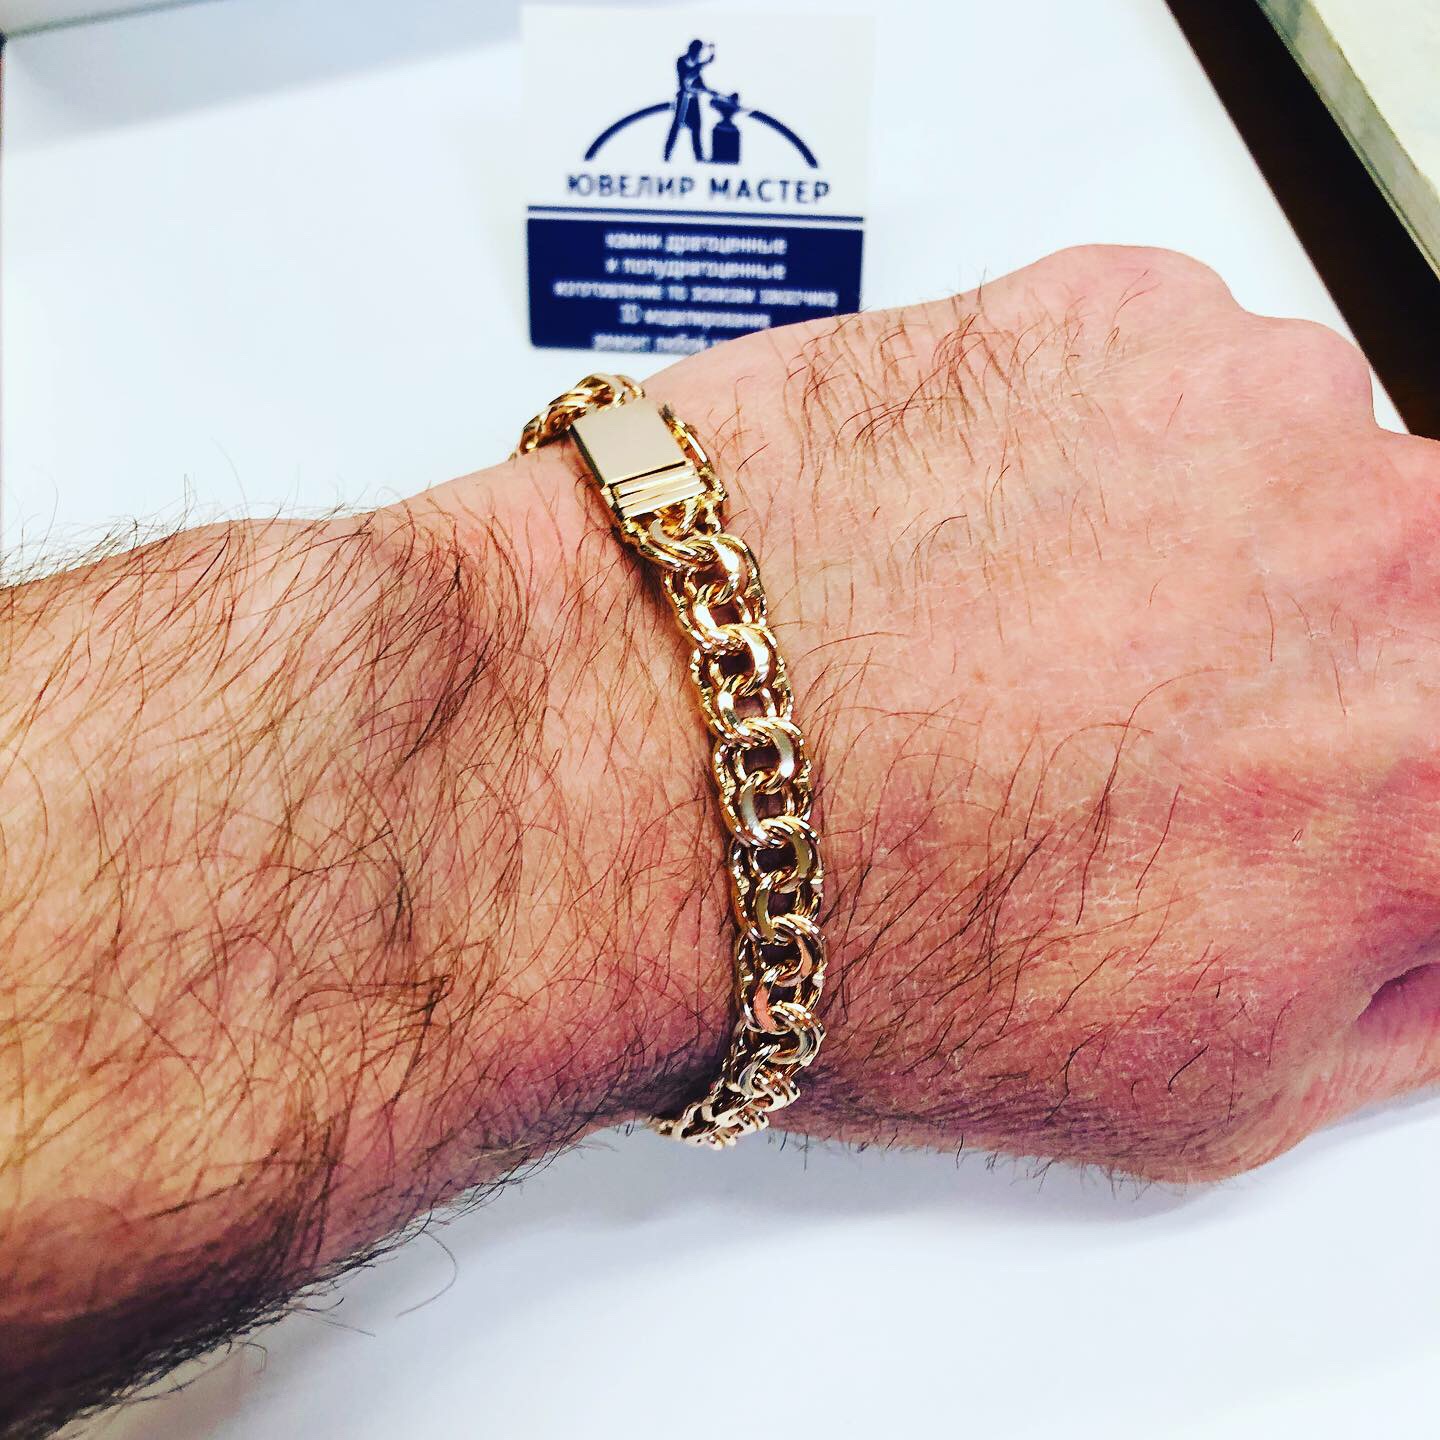 Золотой браслет на руке мужчины